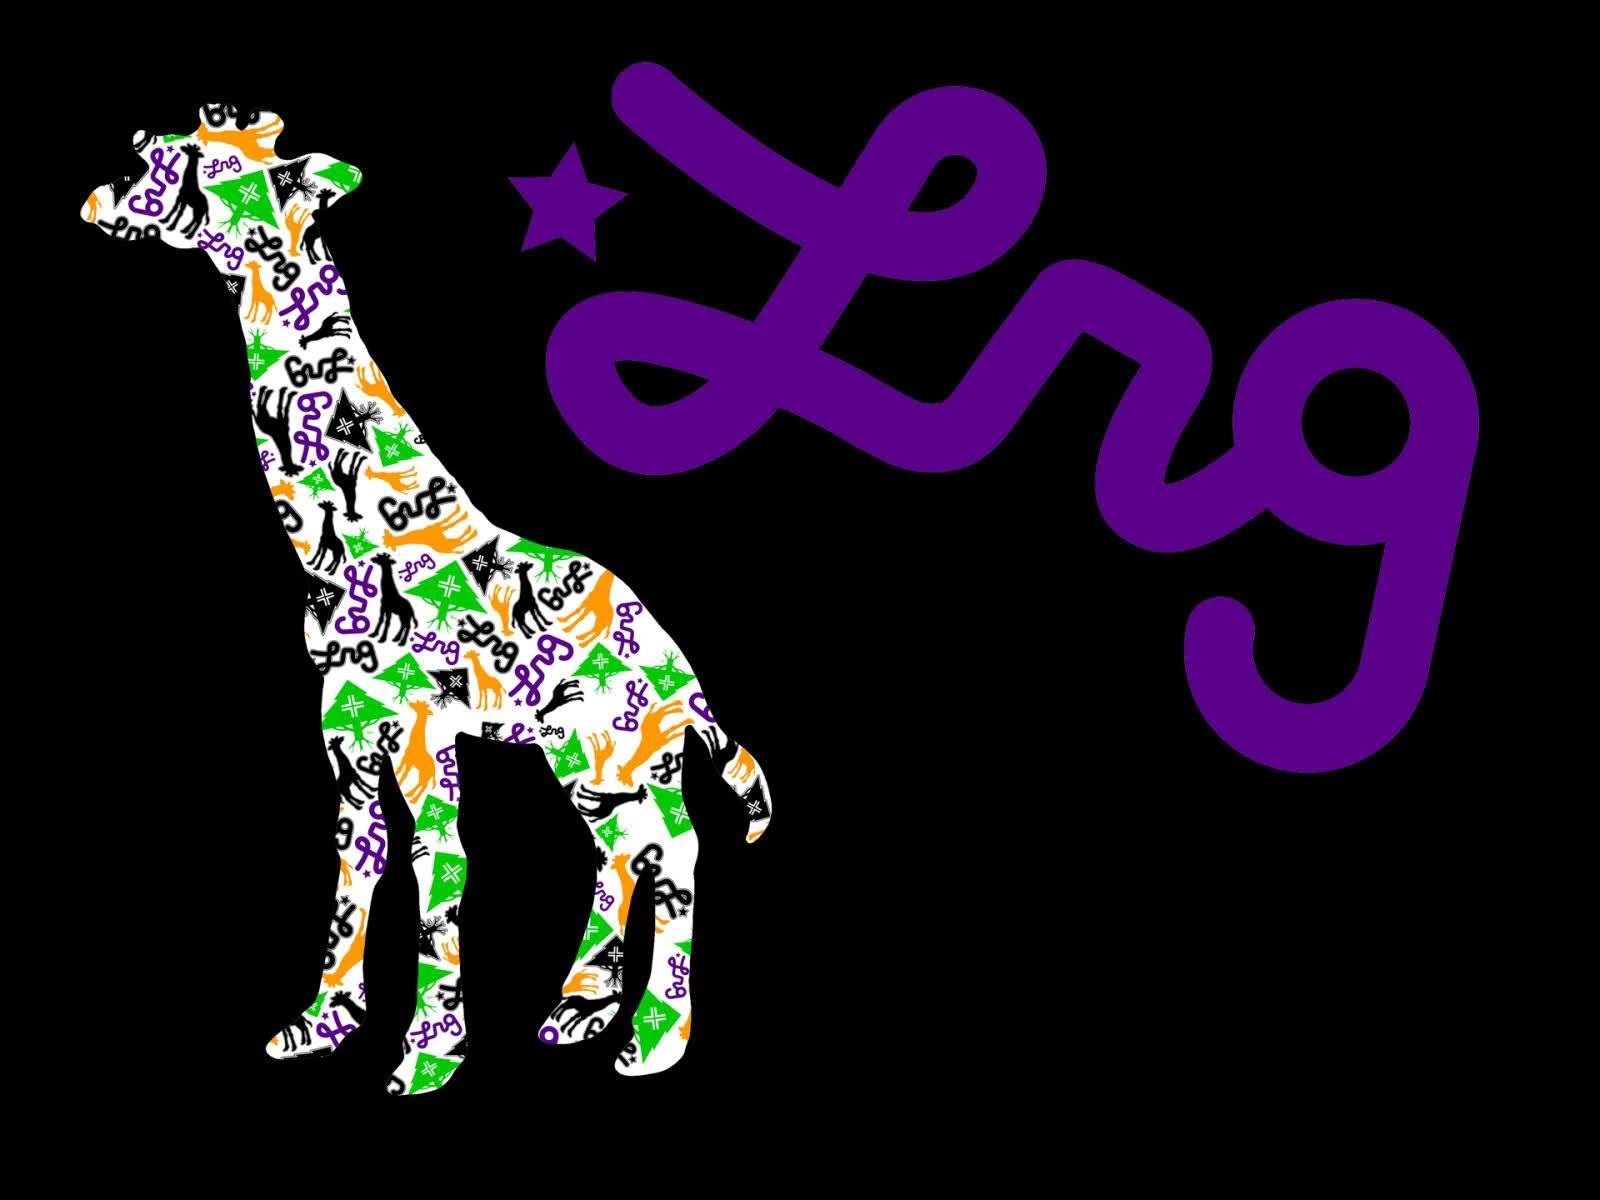 LRG Giraffe Logo - Best 37+ LRG Backgrounds on HipWallpaper | LRG Wallpaper, LRG ...